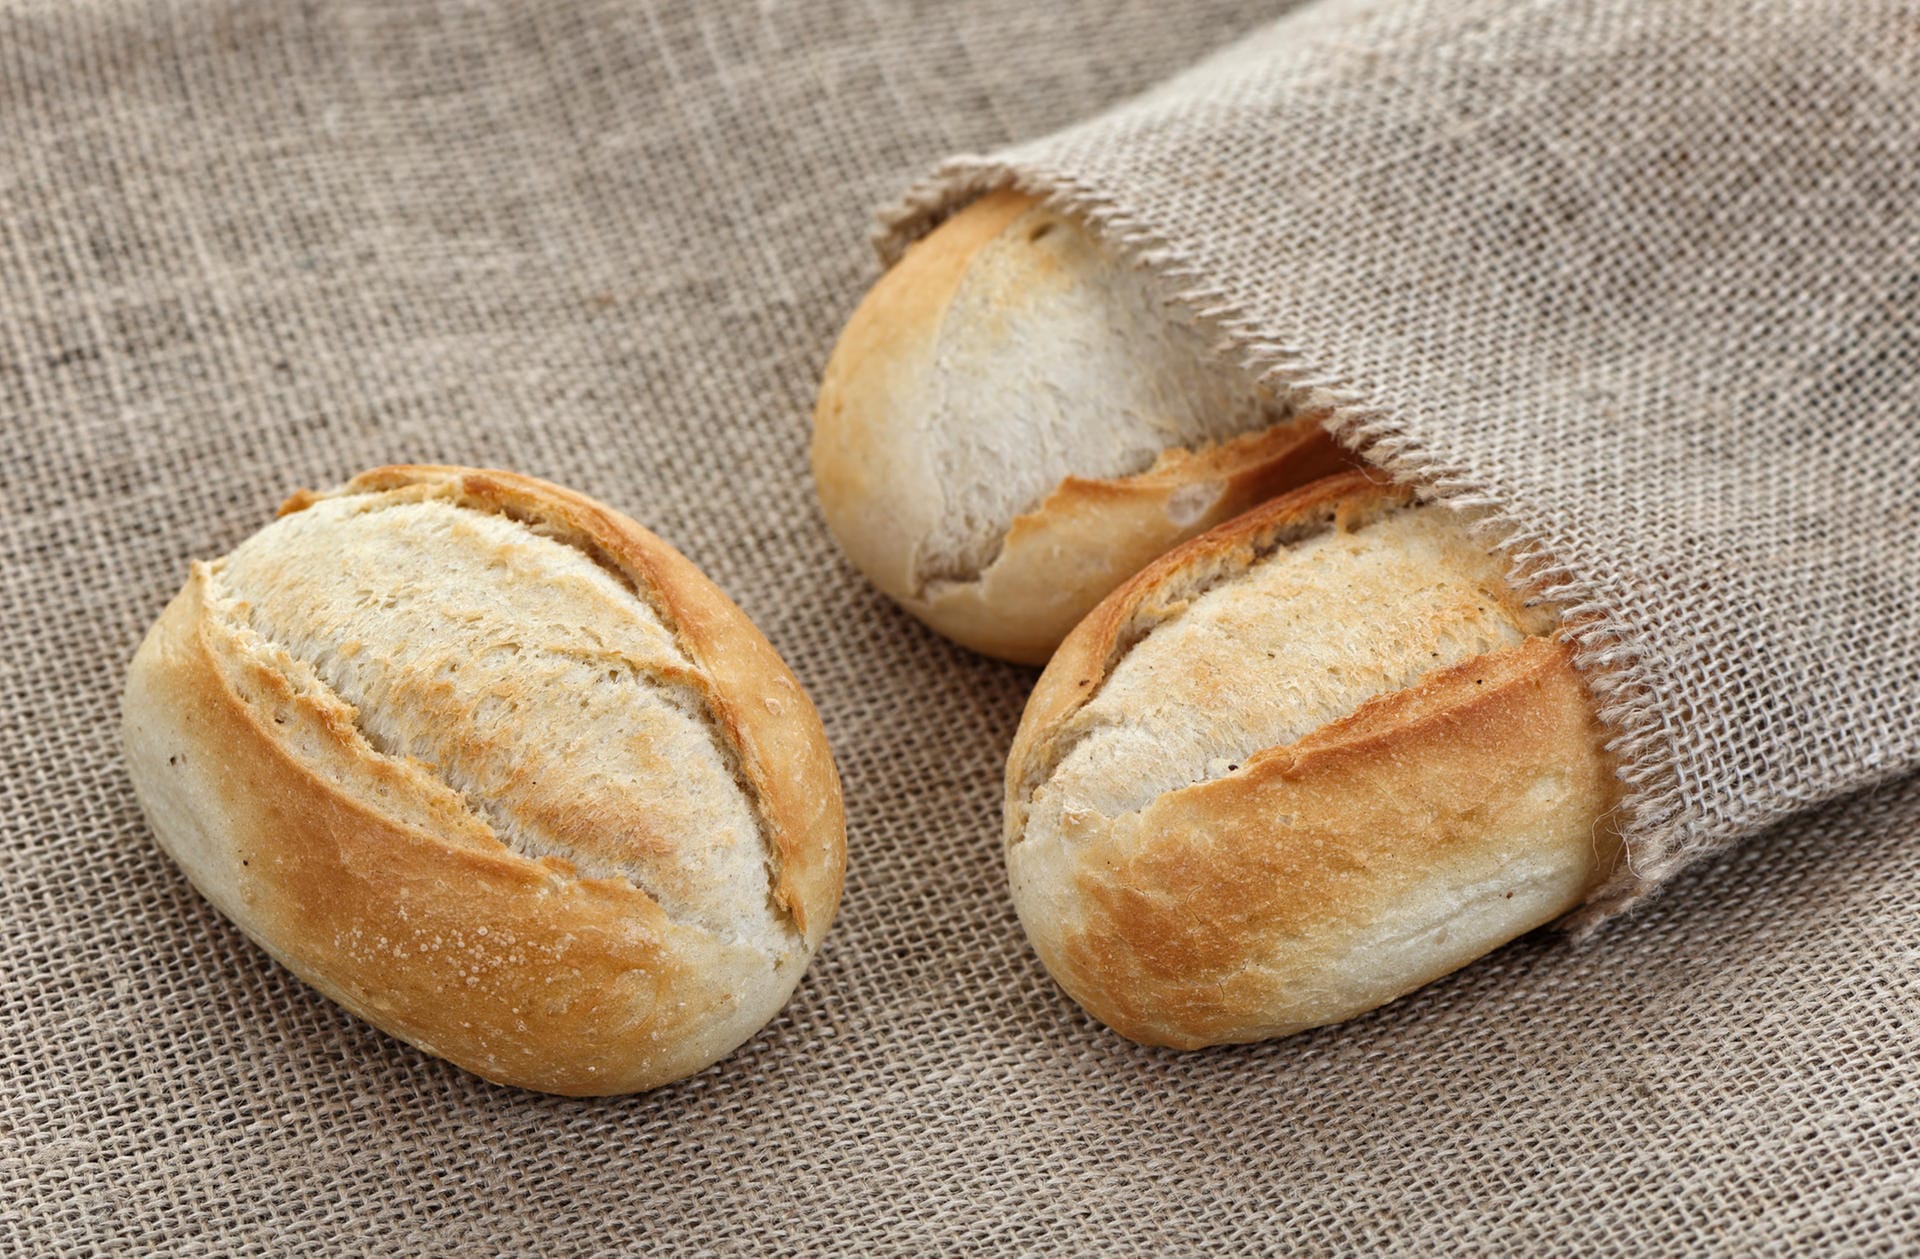 Brot und Brötchen können Käufer beim Bäcker auch in mitgebrachte Stoffbeutel oder Leinensäckchen füllen lassen. Die können übrigens auch genutzt werden, um im Supermarkt Obst und Gemüse zu verpacken.